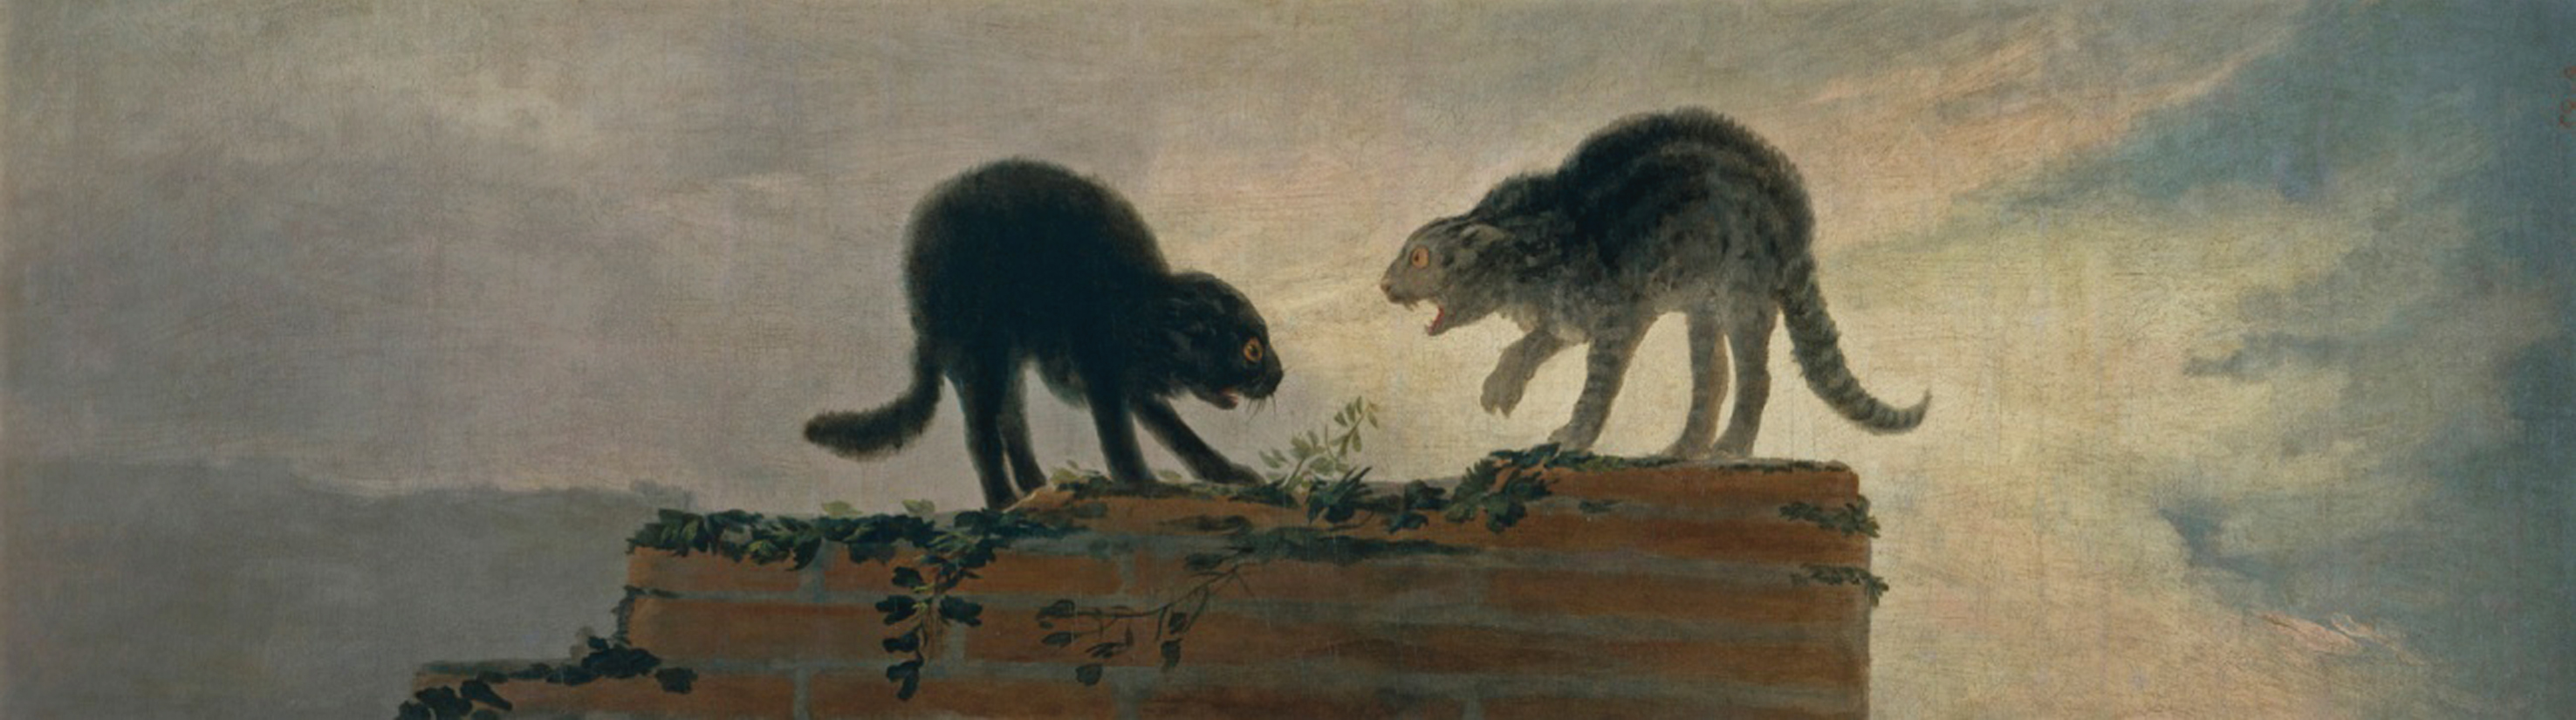 Riña de gatos (cat fight), Francisco de Goya y Lucientes (1786); Museo del Prado, Madrid.